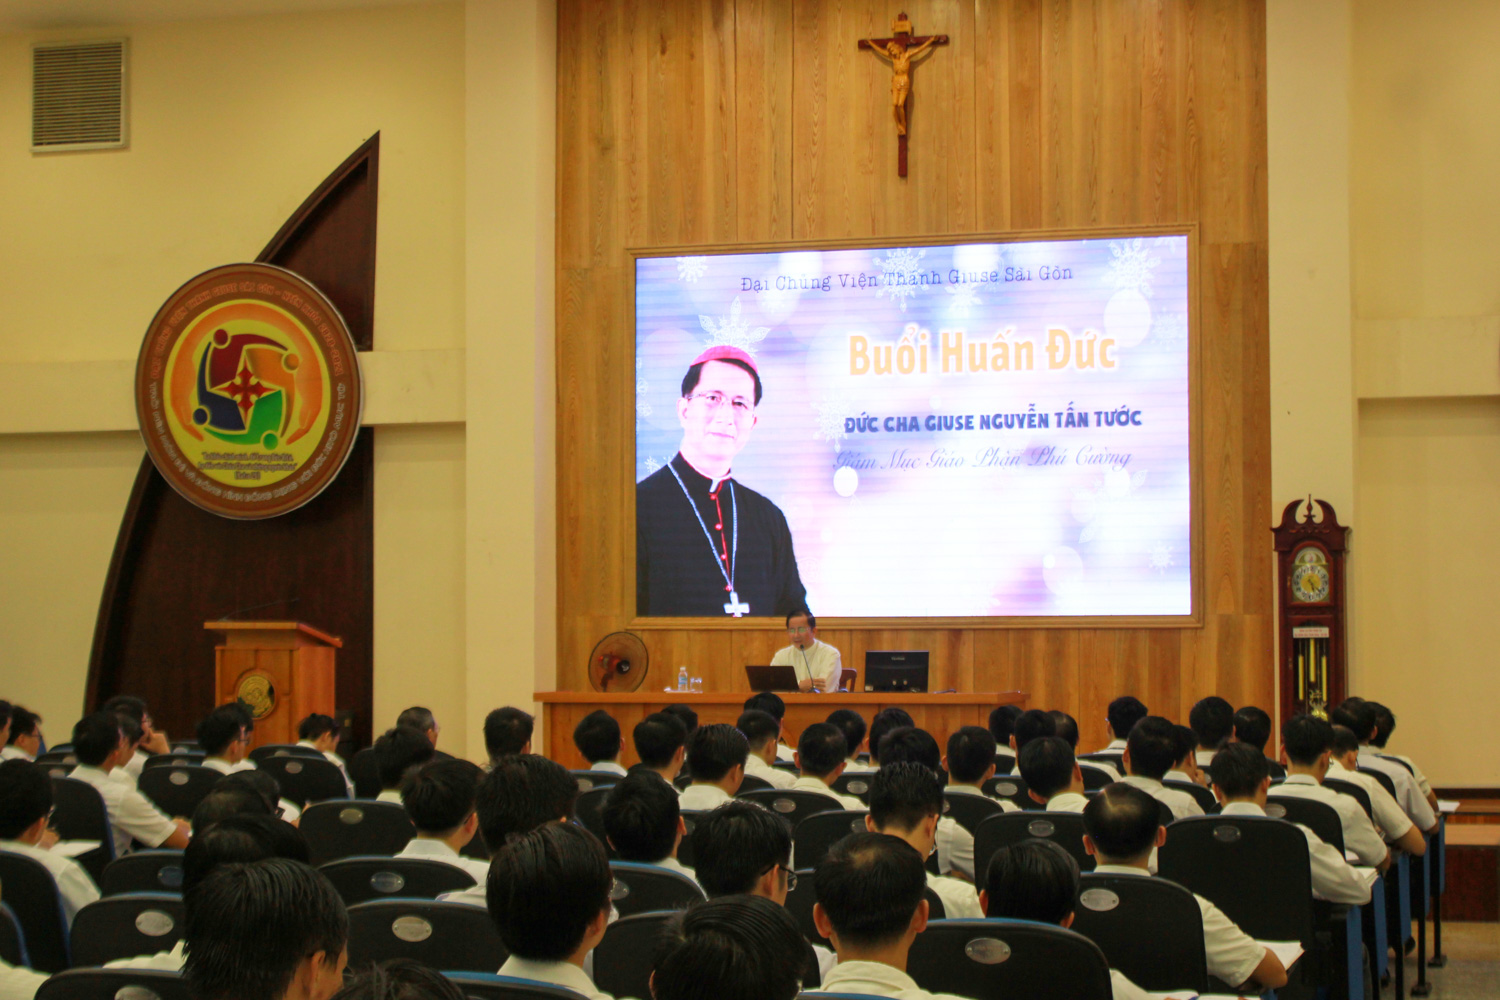 Buổi Huấn đức của Đức cha Giuse Nguyễn Tấn Tước tại Đại chủng viện Thánh Giuse Sài Gòn năm 2020